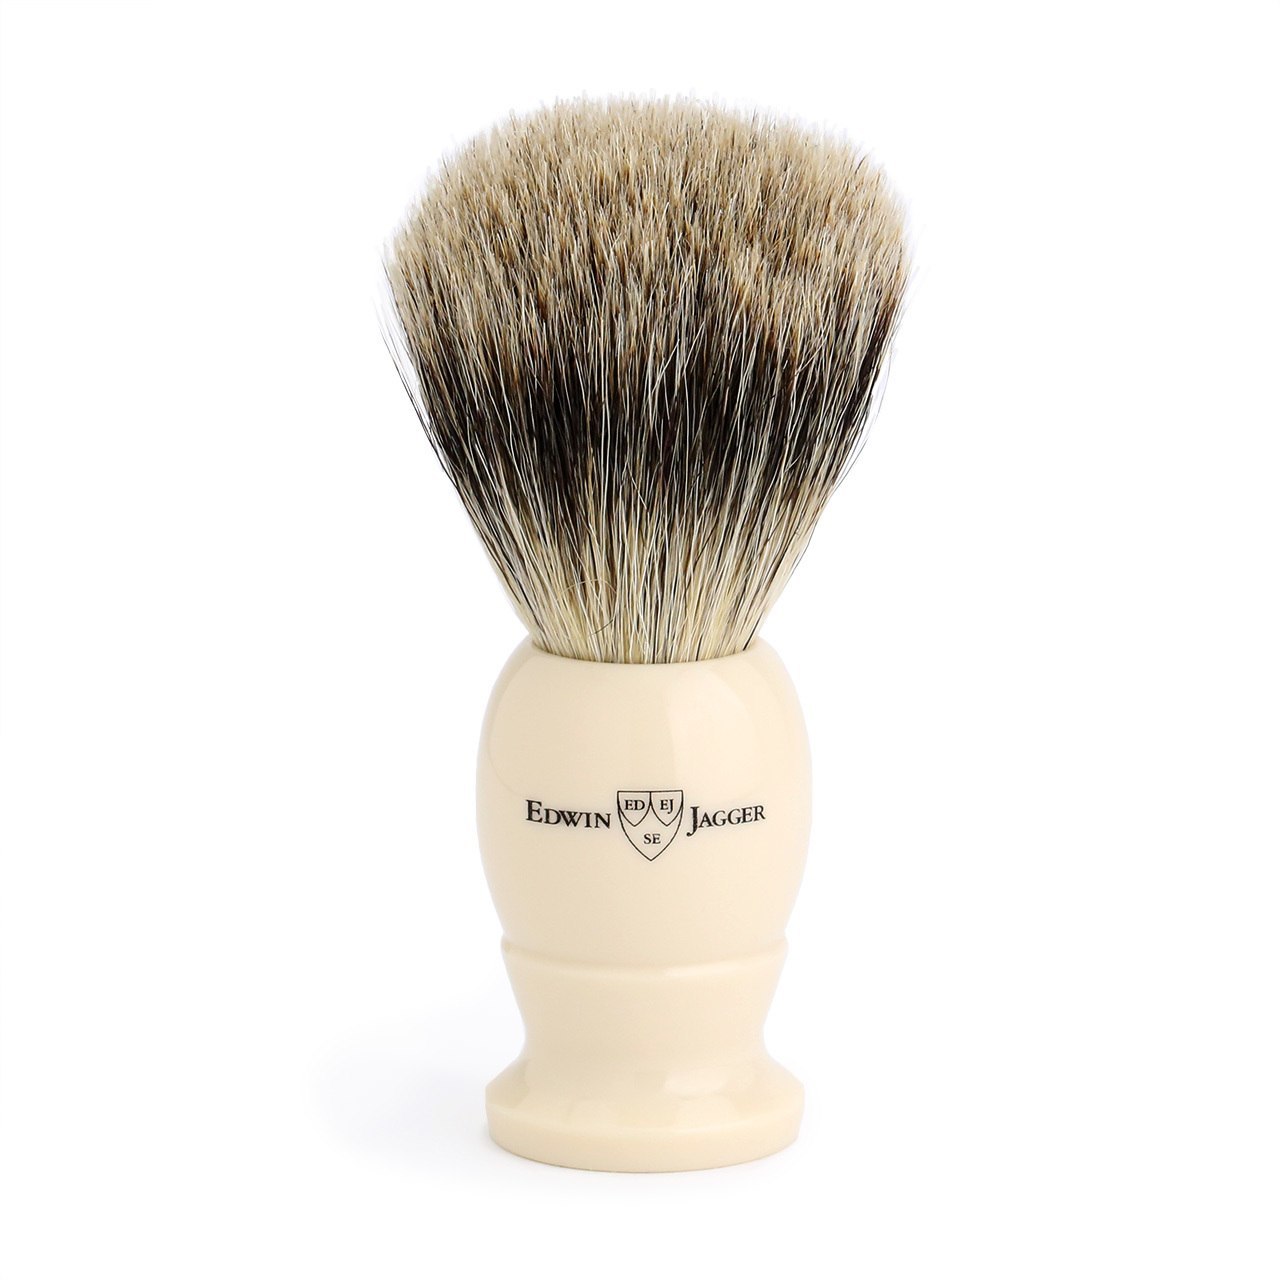 Edwin Jagger Best Badger Large Shaving Brush - Imitation Ivory